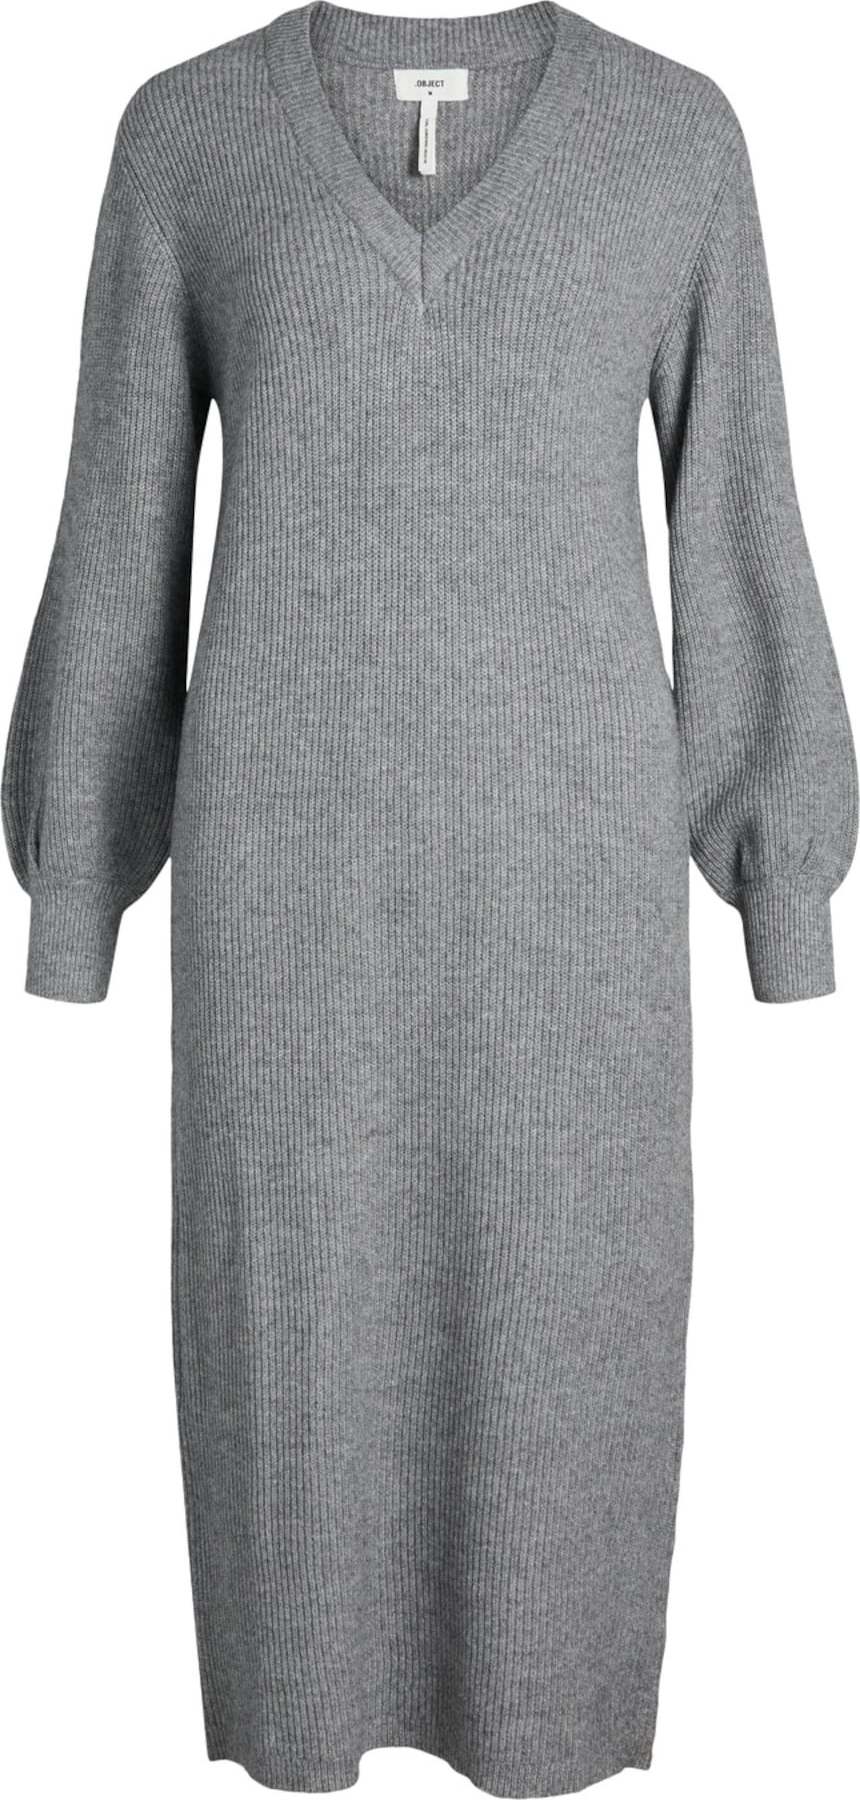 OBJECT Úpletové šaty 'Malena' šedý melír